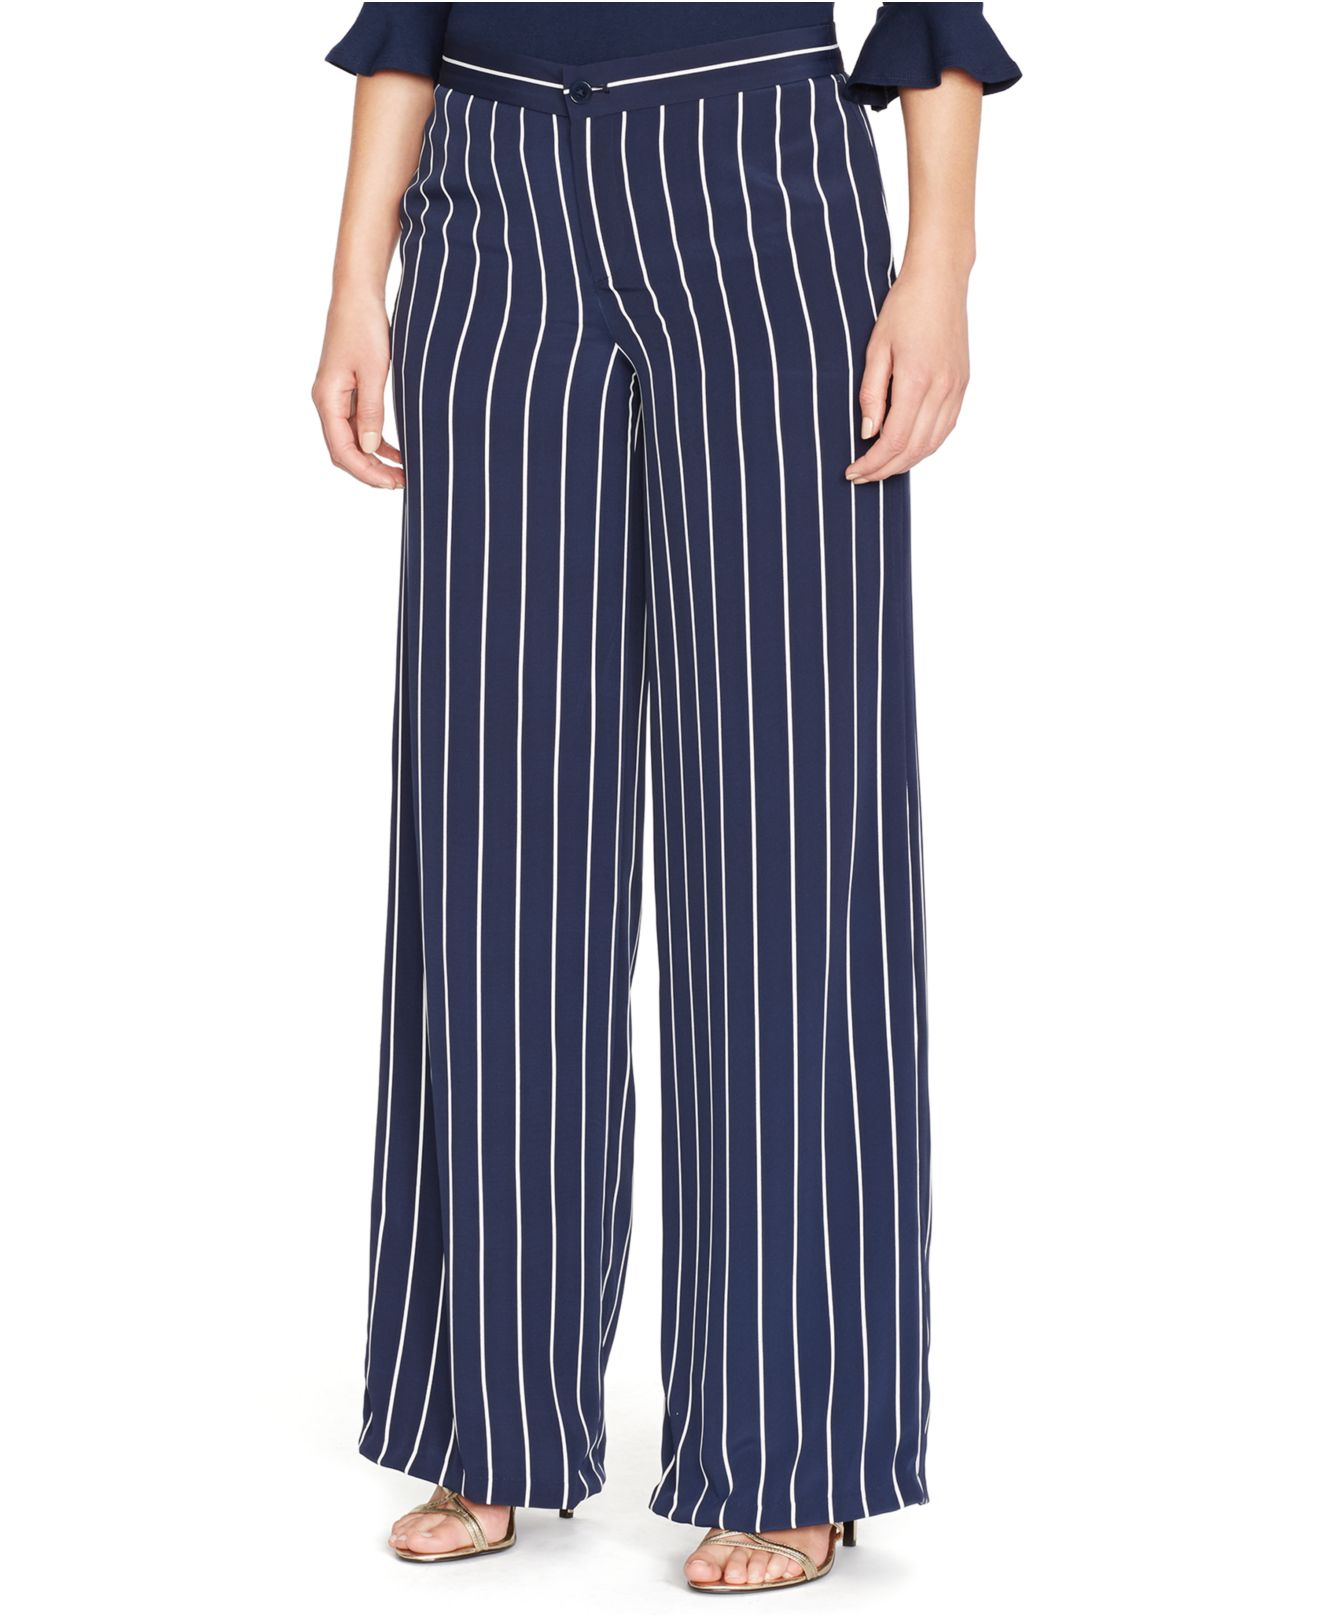 Lyst - Lauren by ralph lauren Plus Size Striped Wide-Leg Pants in Blue